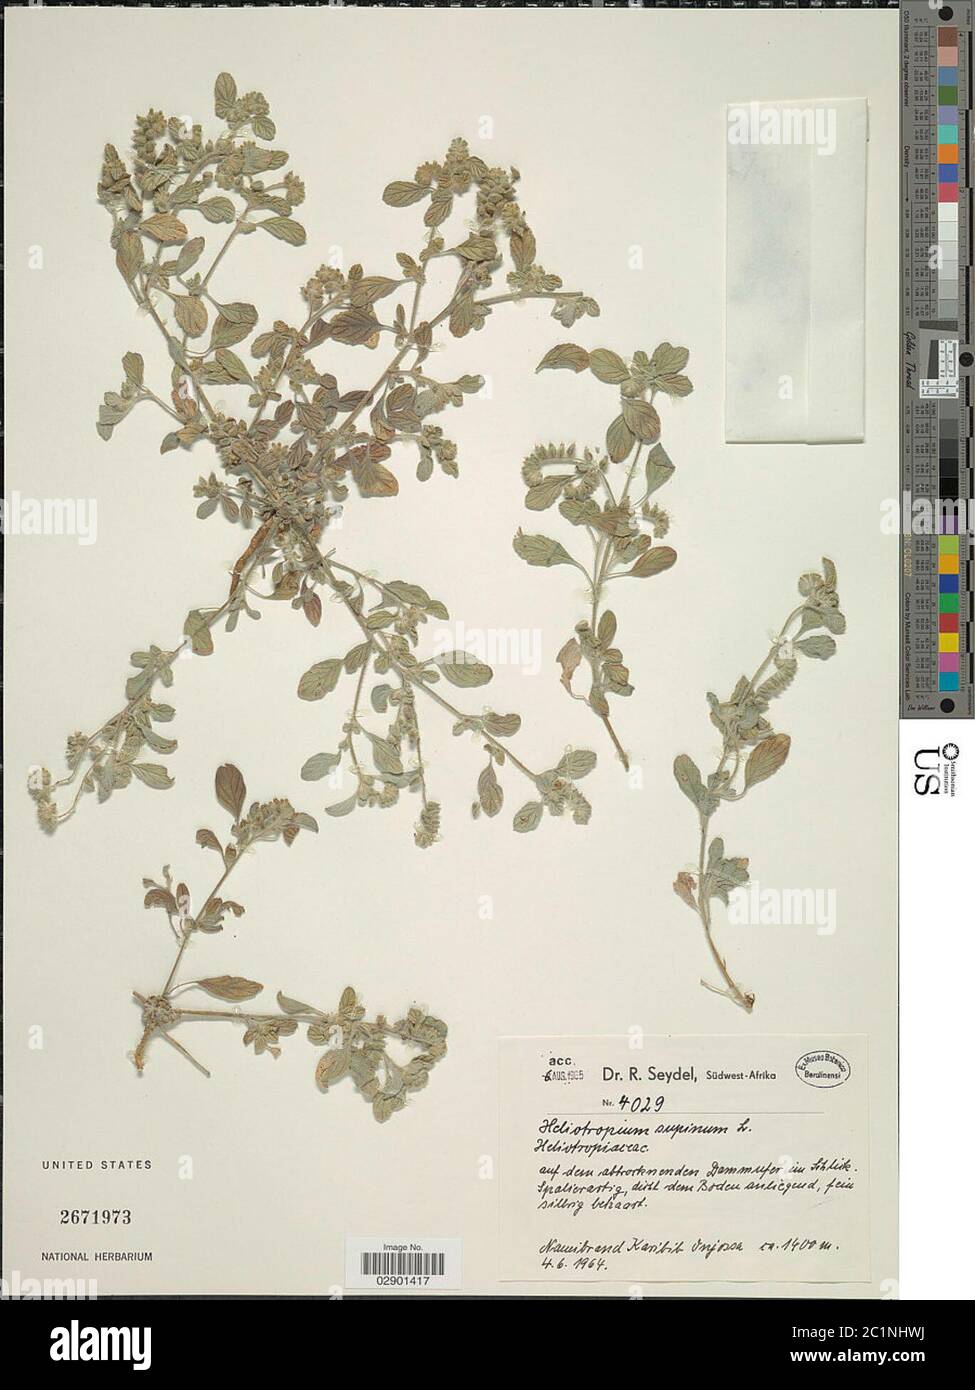 Heliotropium supinum L Heliotropium supinum L. Stock Photo